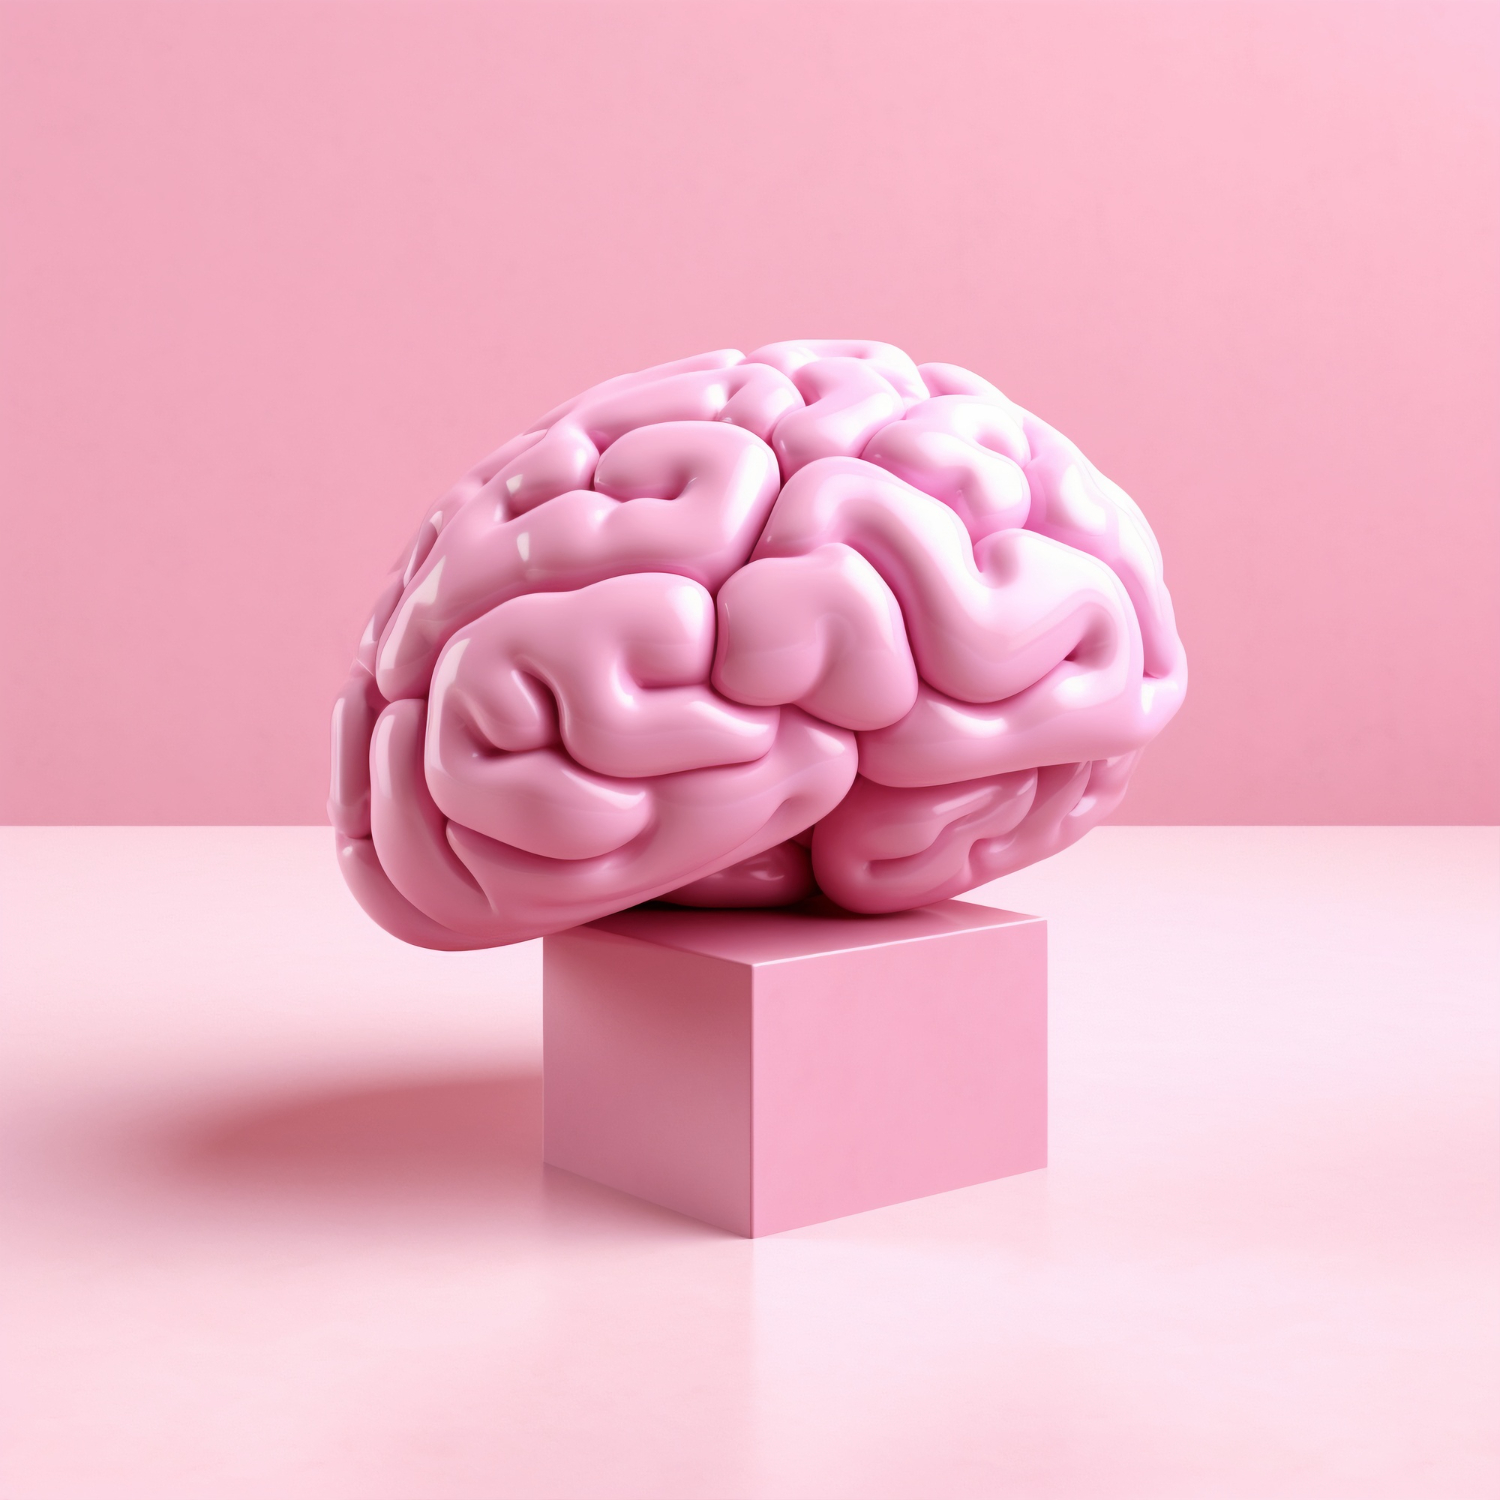 El cerebro: su importancia y cuidado